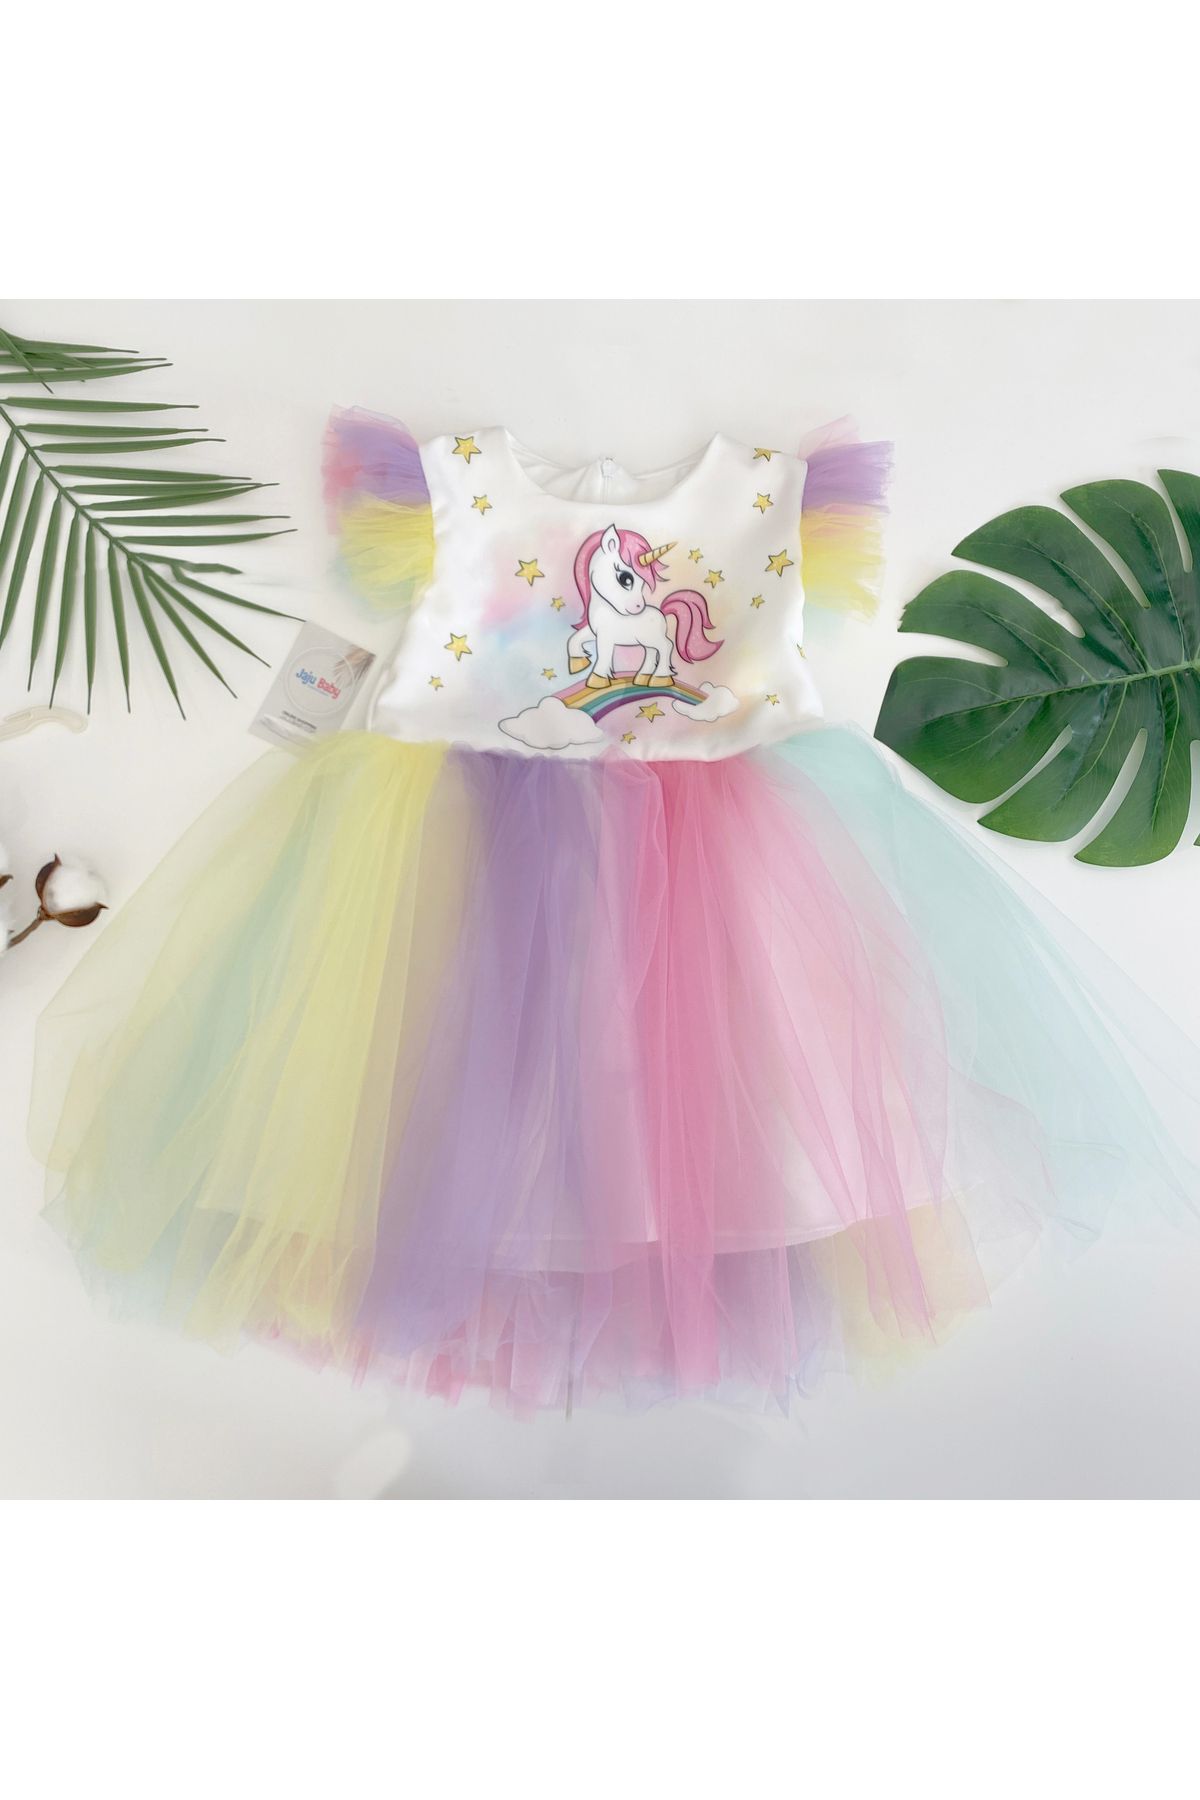 Jaju Baby Kız Çocuk Unicorn Desenli Tütü Etekli Elbise